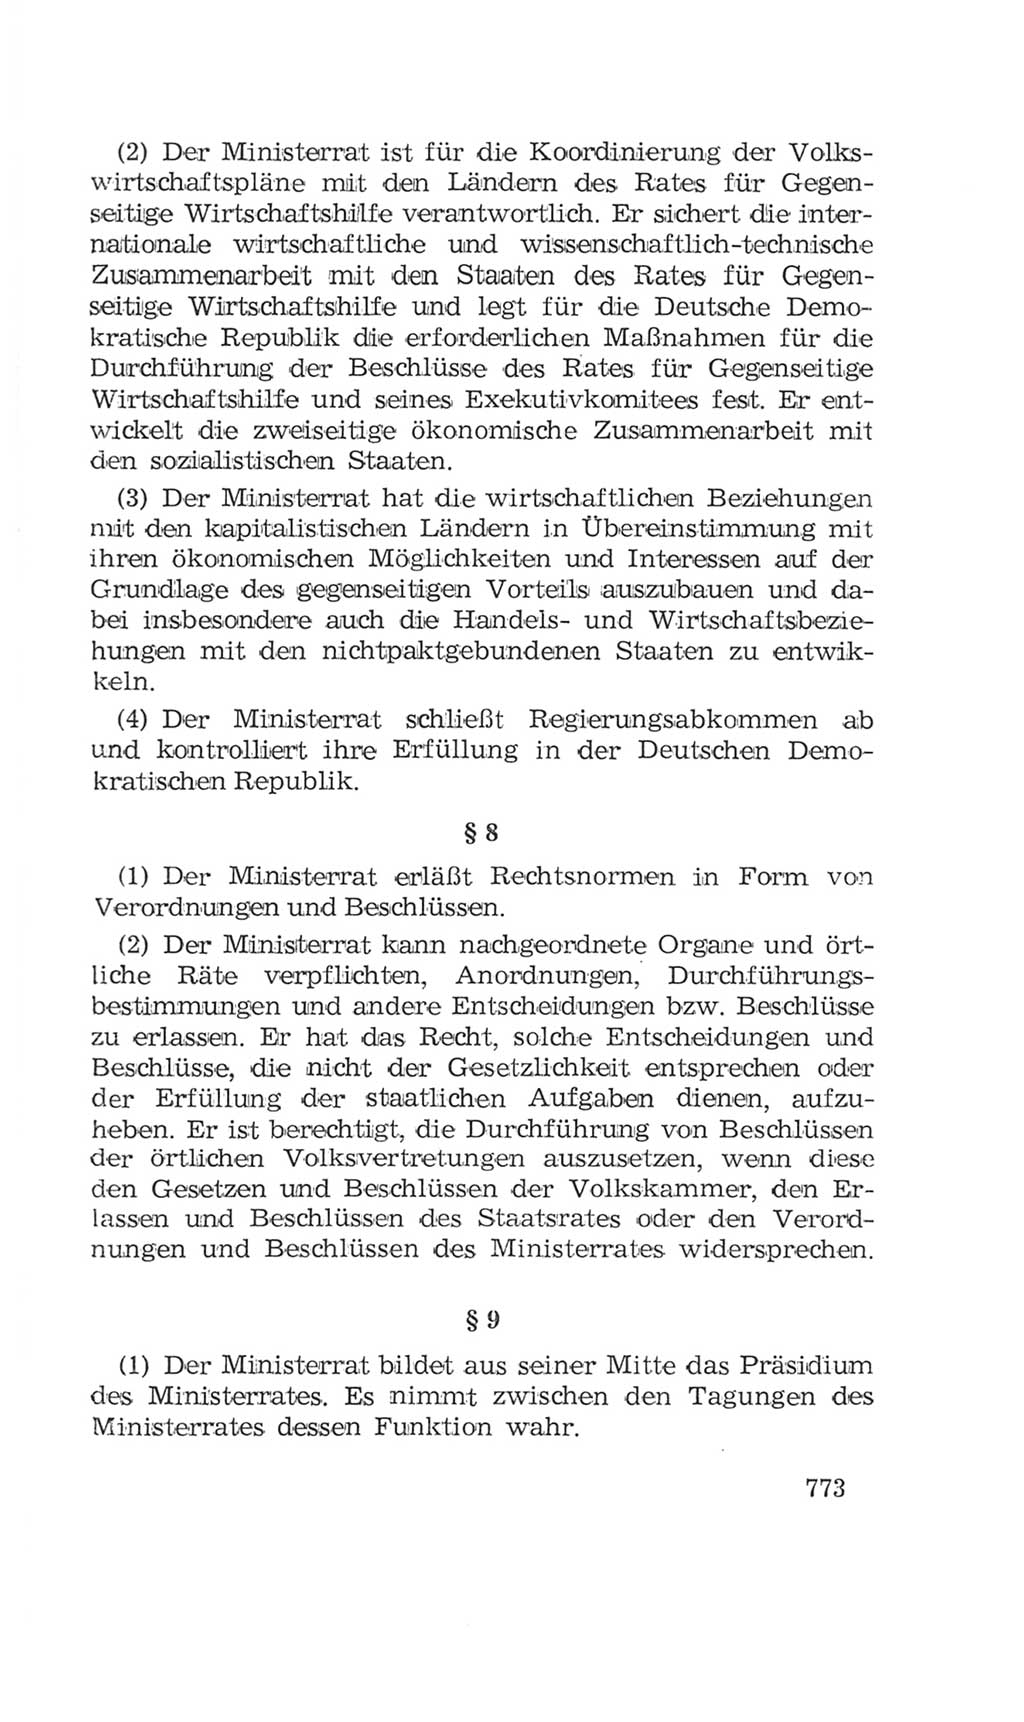 Volkskammer (VK) der Deutschen Demokratischen Republik (DDR), 4. Wahlperiode 1963-1967, Seite 773 (VK. DDR 4. WP. 1963-1967, S. 773)